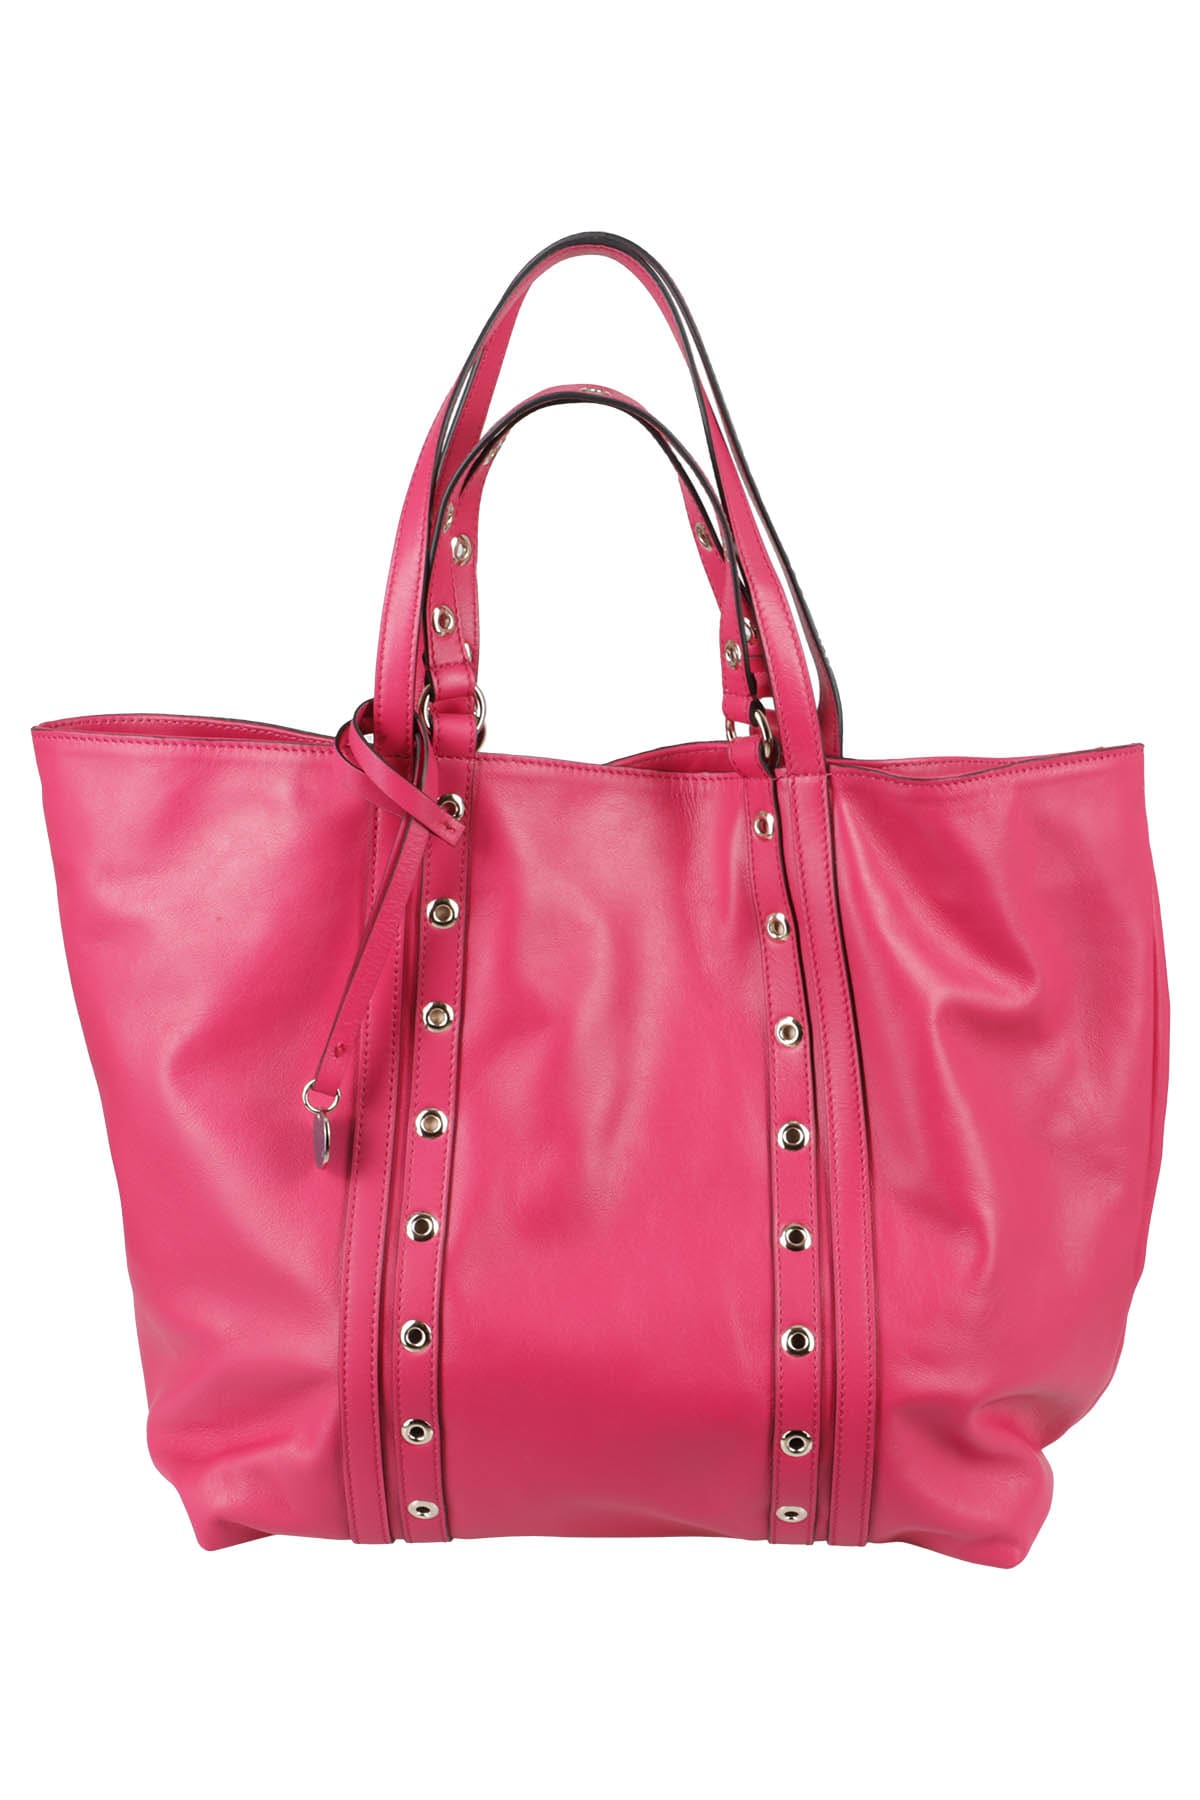 REDValentino SKY COMBAT TOTE - Handbag for Women